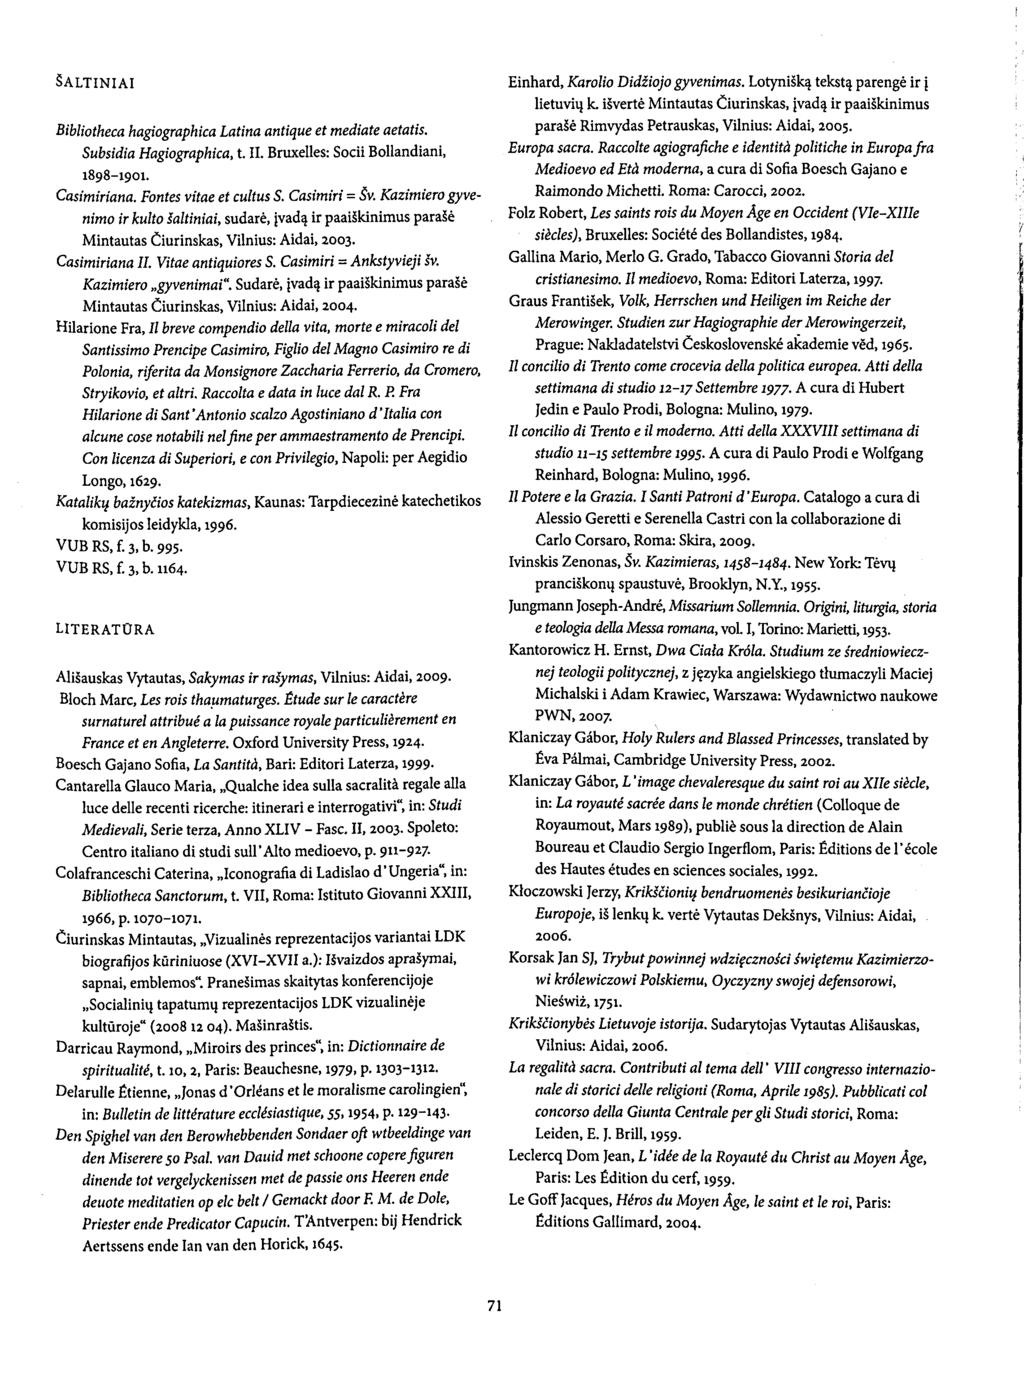 ŠALTINIAI Bibliotheca hagiographica Latina antique et mediate aetatis. Subsidia Hagiographica, t. II. Bruxelles: Socii Bollandiani, 1898-1901. Casimiriana. Fontes vitae et cultus S. Casimiri = Šv.